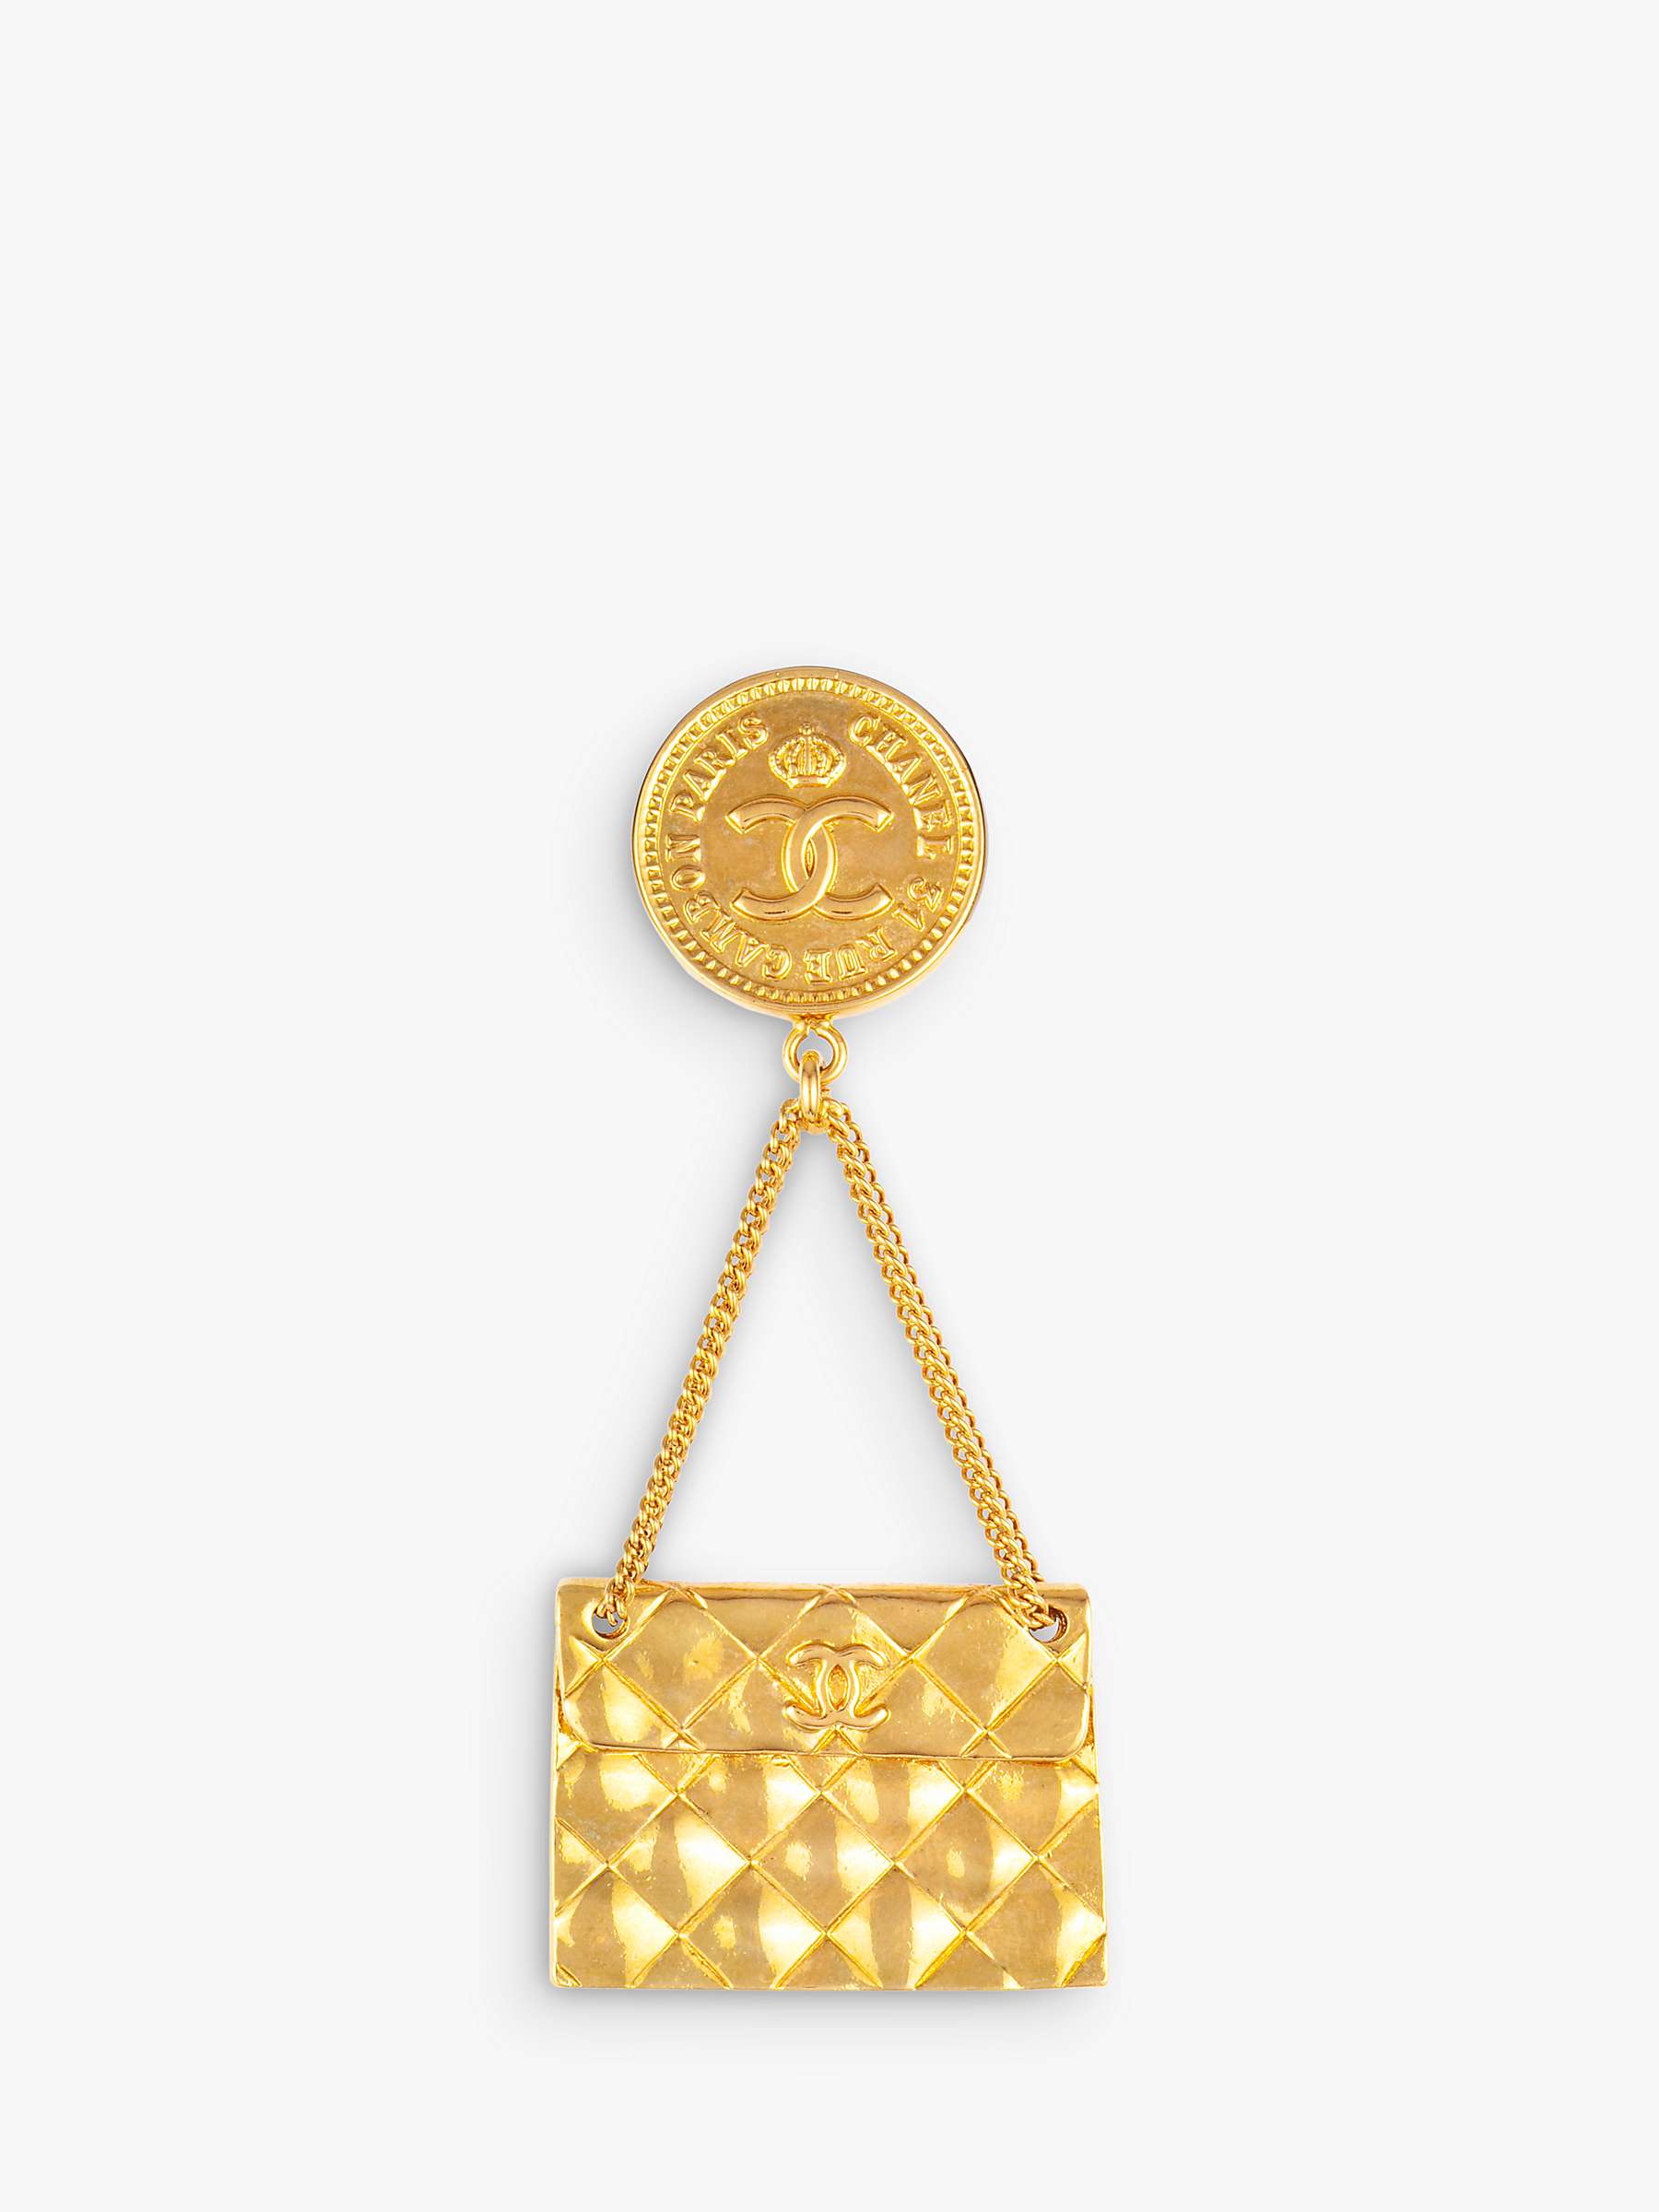 Buy Susan Caplan Vintage Chanel Handbag Medallion Brooch, Dated 1994 Online at johnlewis.com